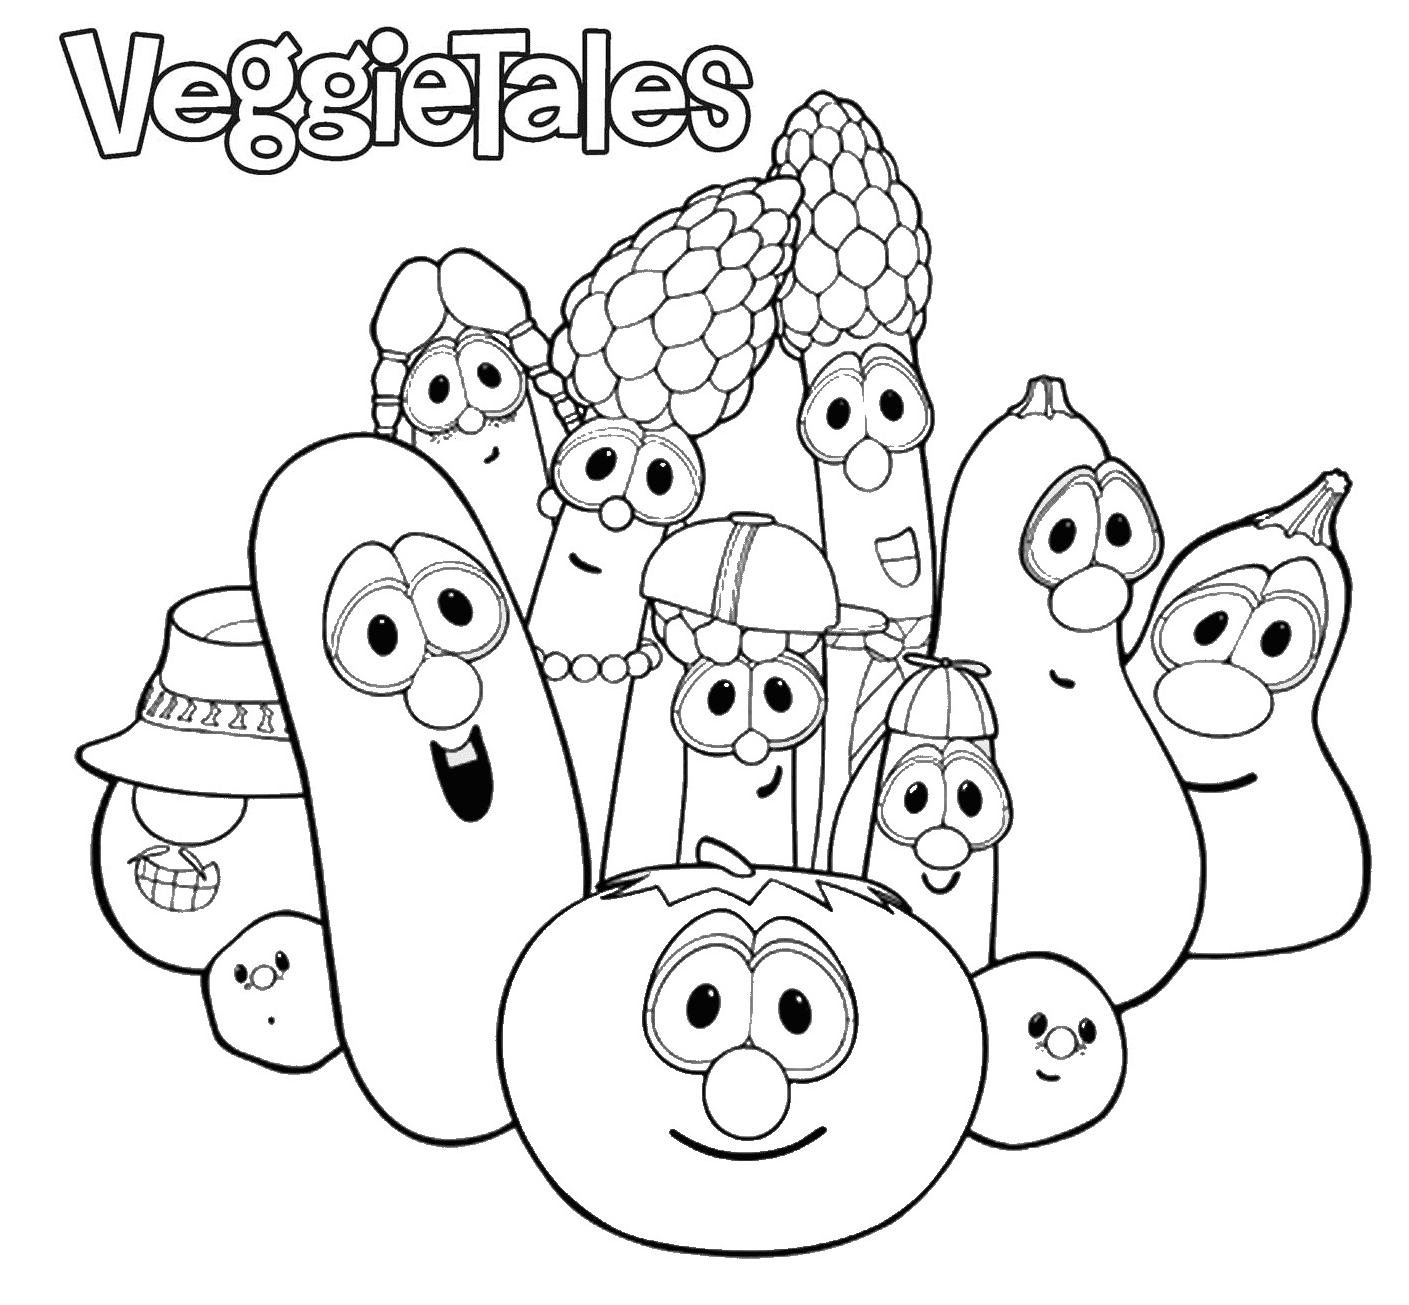 VeggieTales da VeggieTales